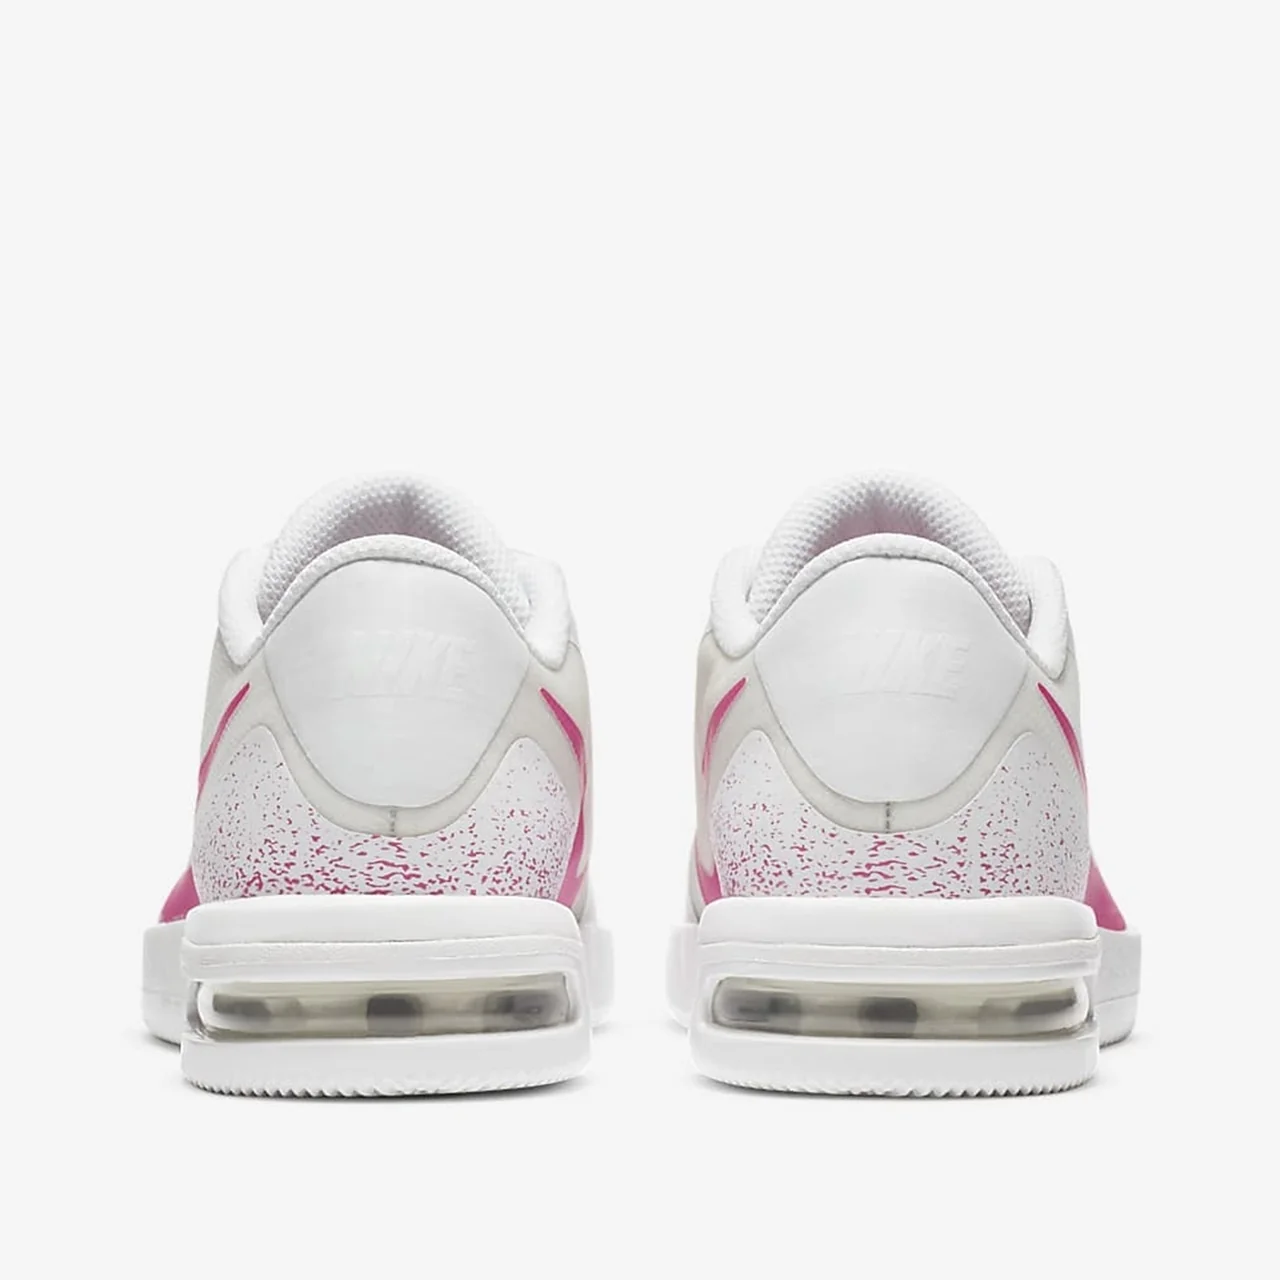 Nike Air Max Vapor Wing Women Tennis/Padel White/Pink Size 41